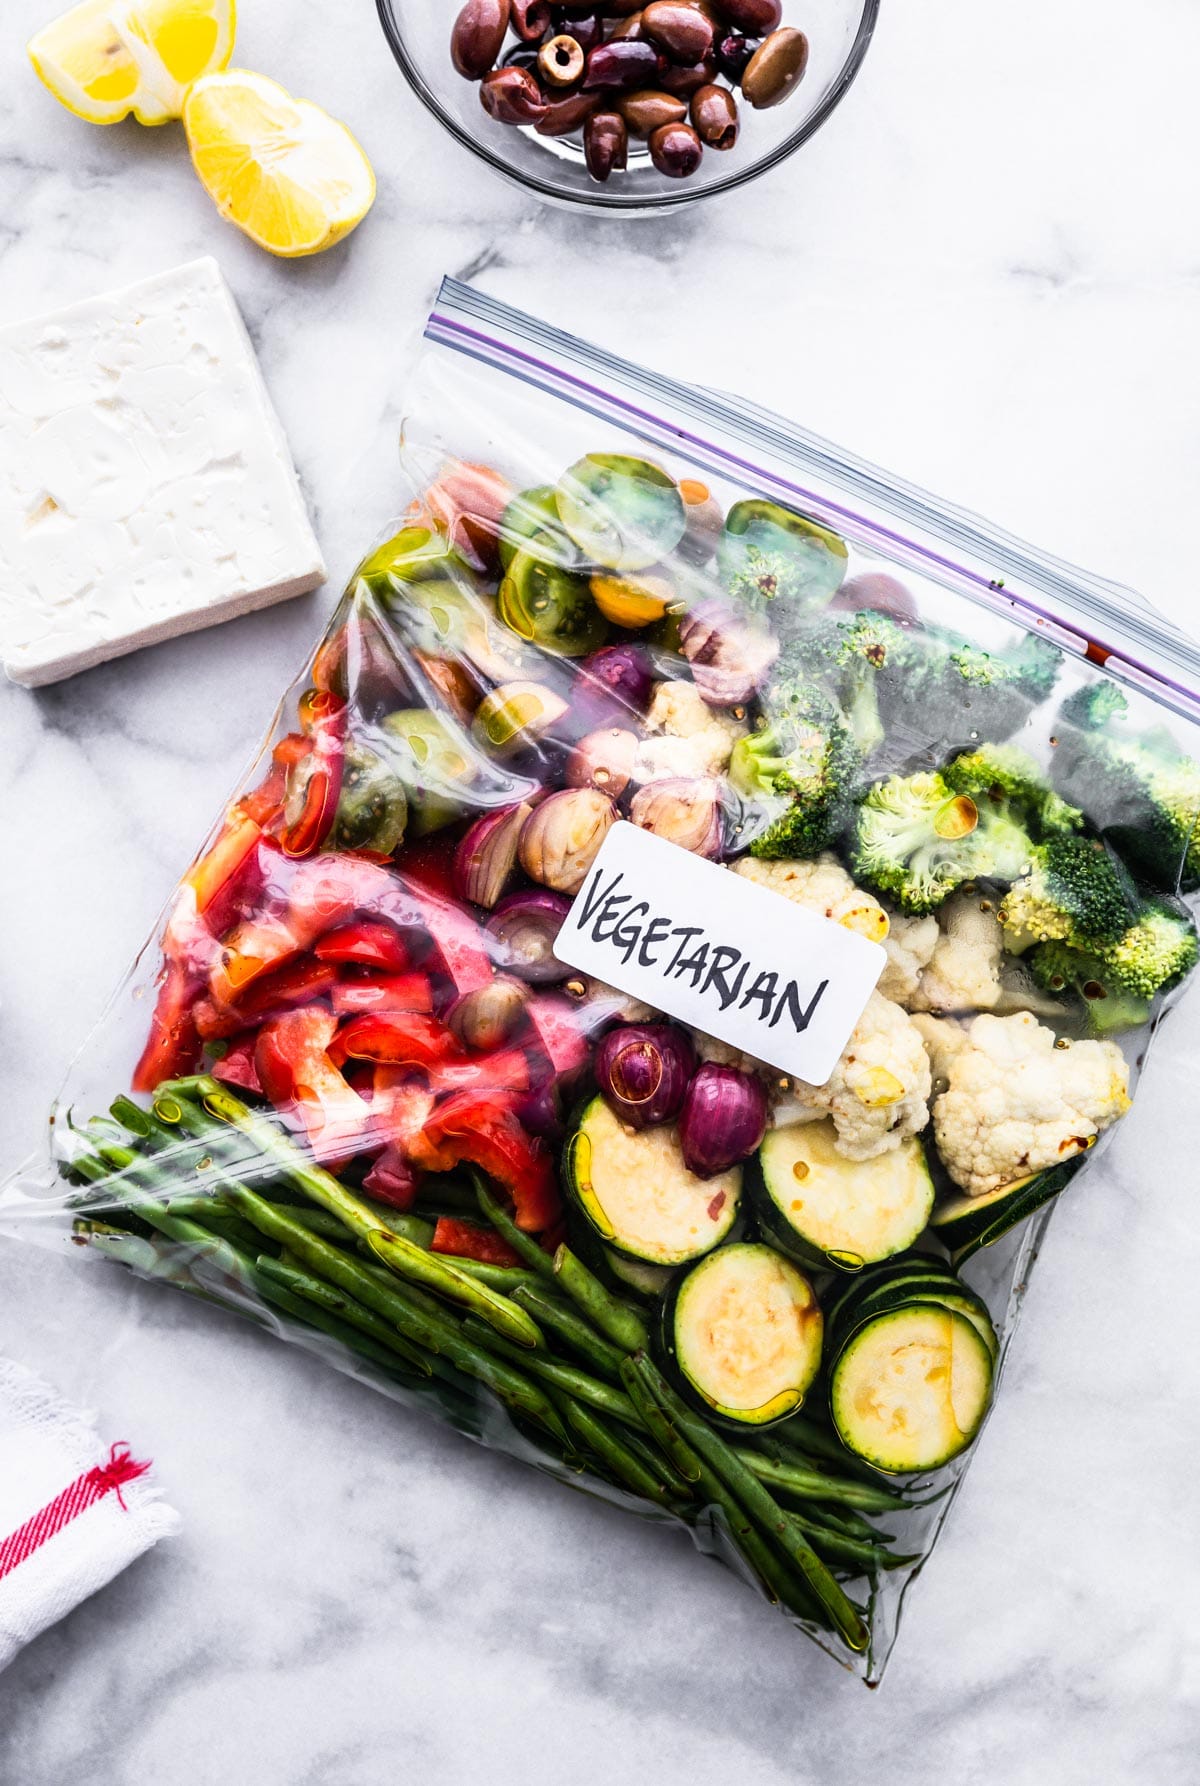 Ziplock bag filled with fresh veggies with Greek seasonings on marble countertop